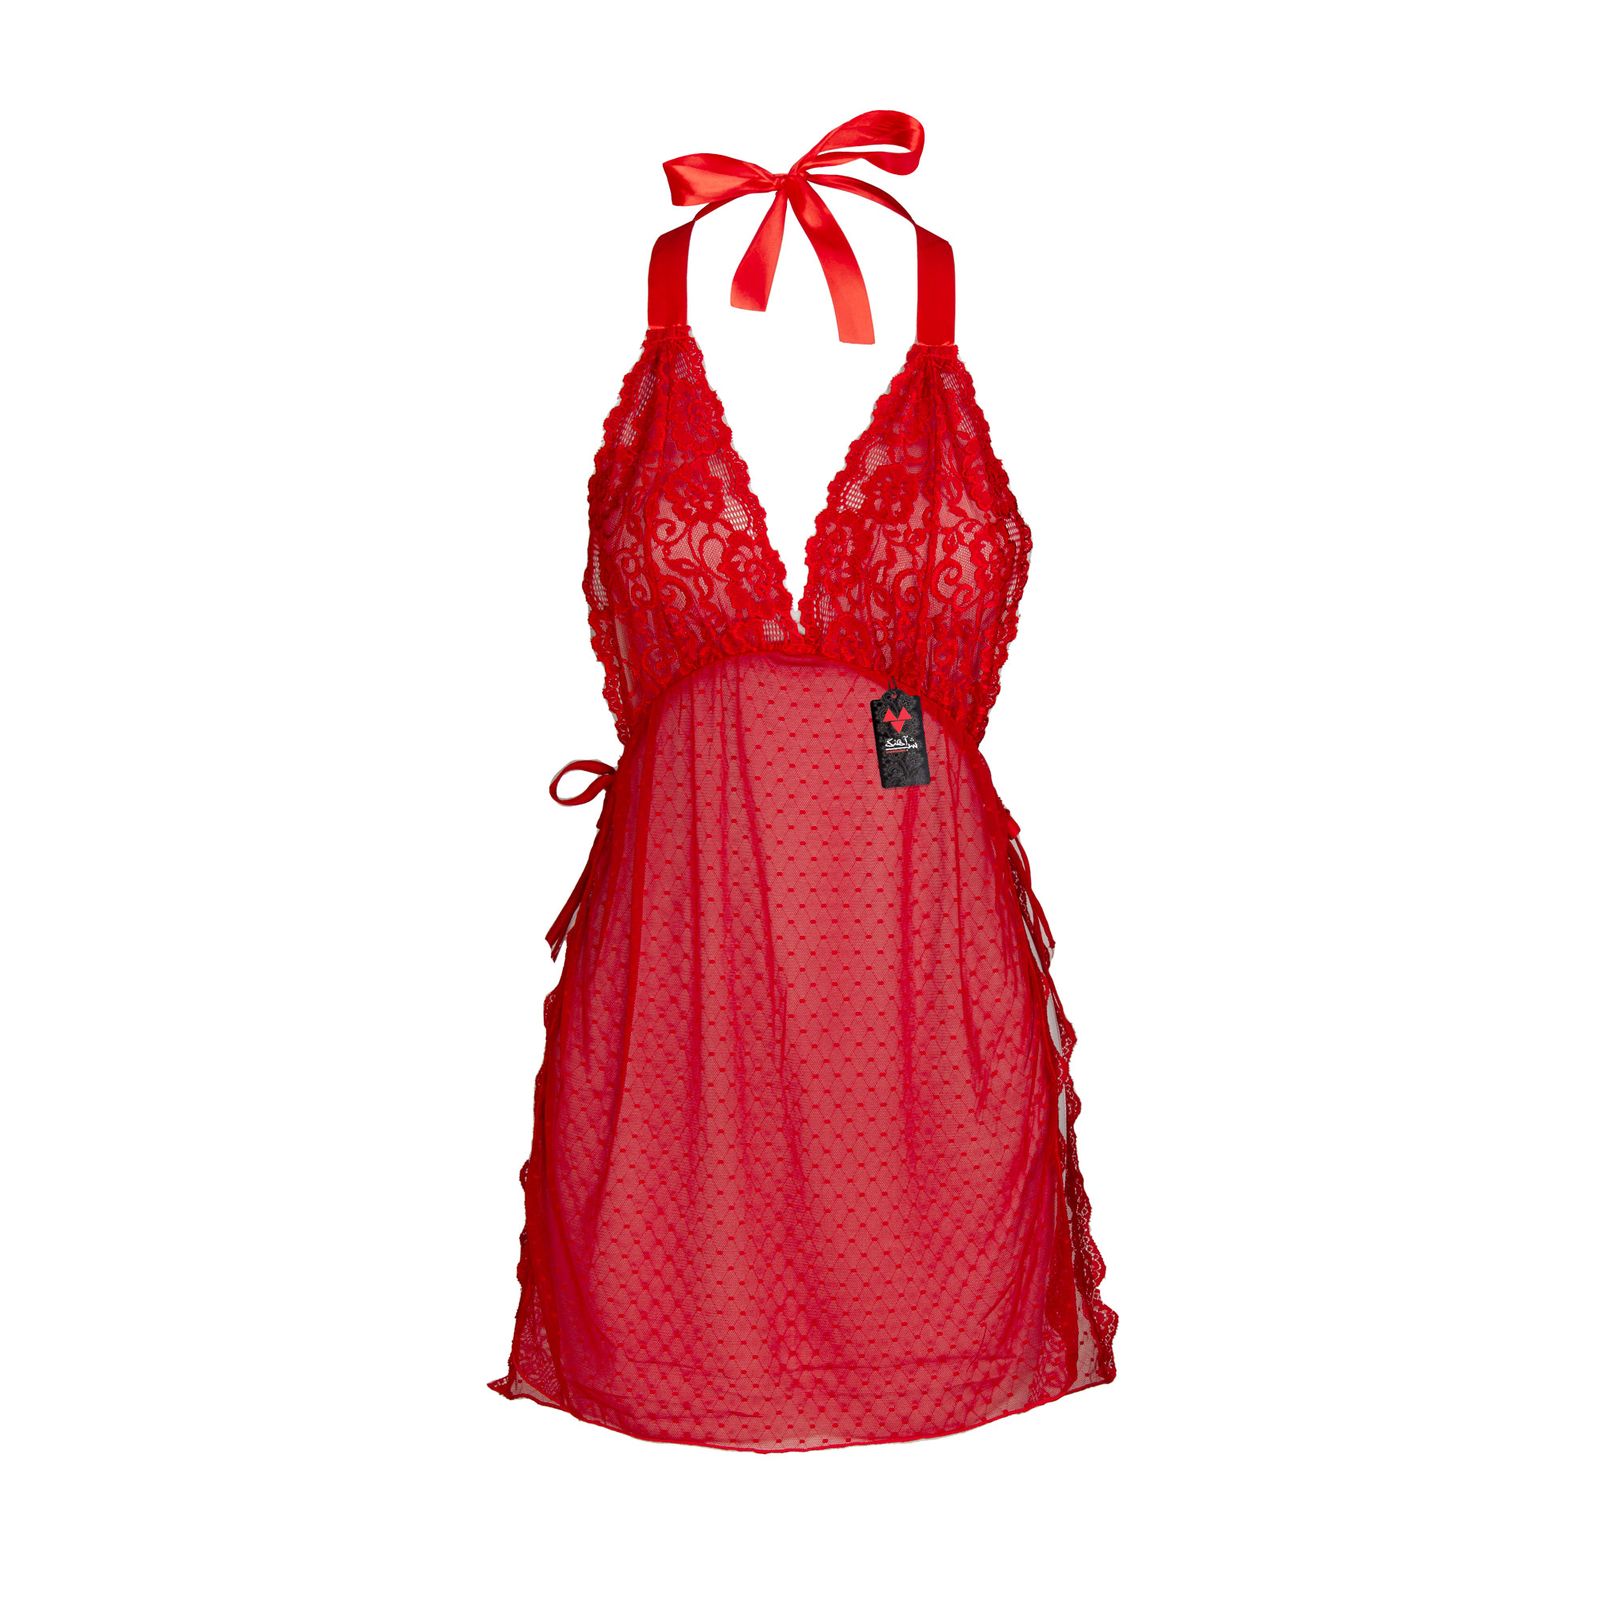 لباس خواب زنانه شباهنگ مدل Waiter رنگ قرمز -  - 6